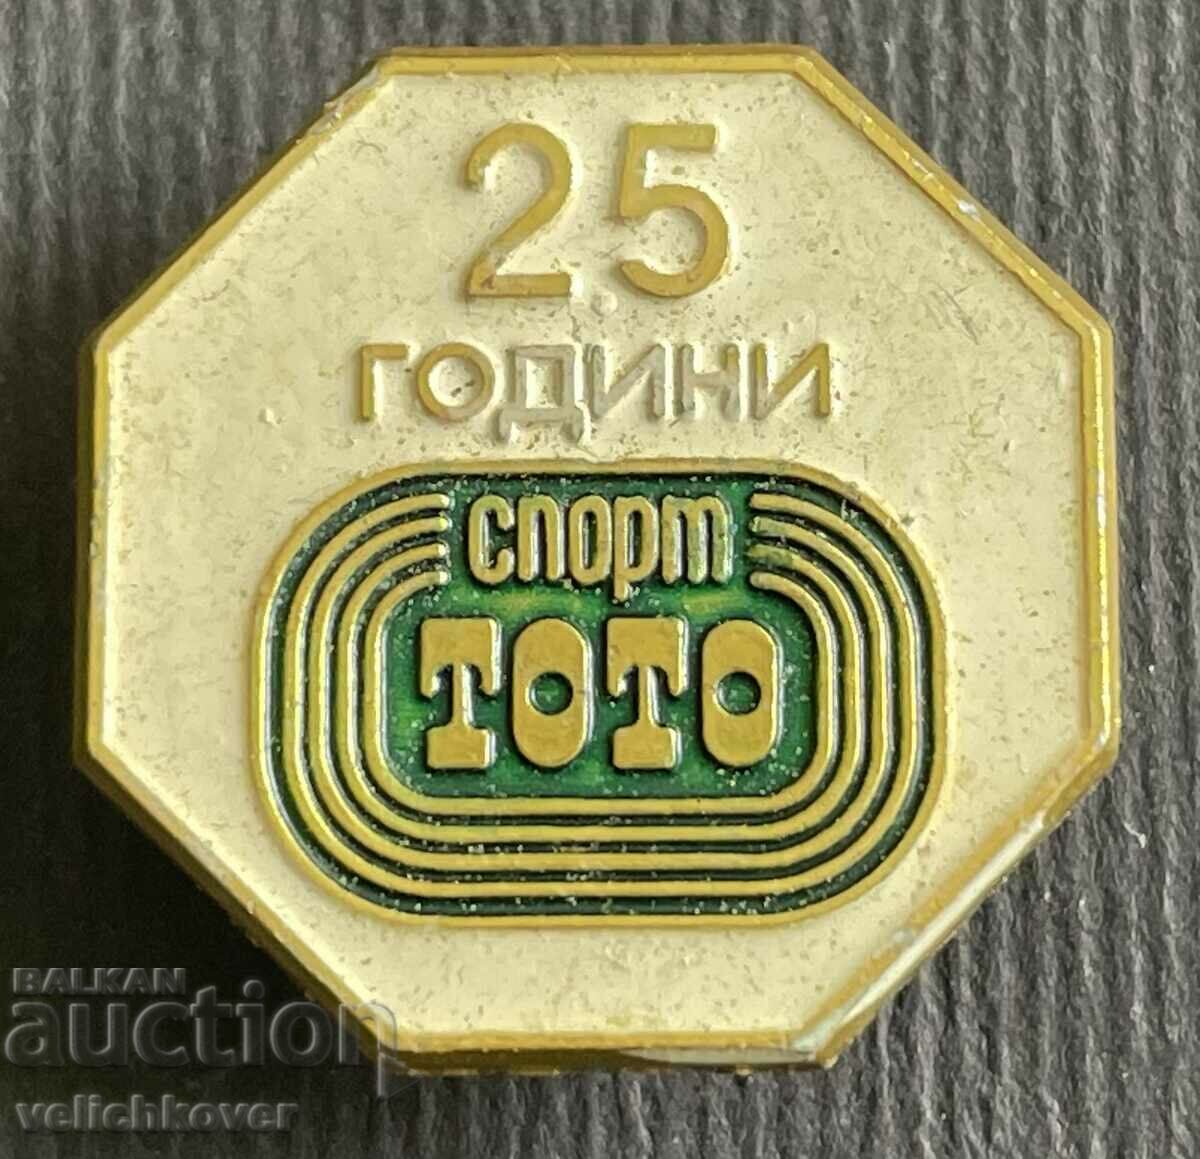 36895 Bulgaria semn 25 ani - Sport Toto